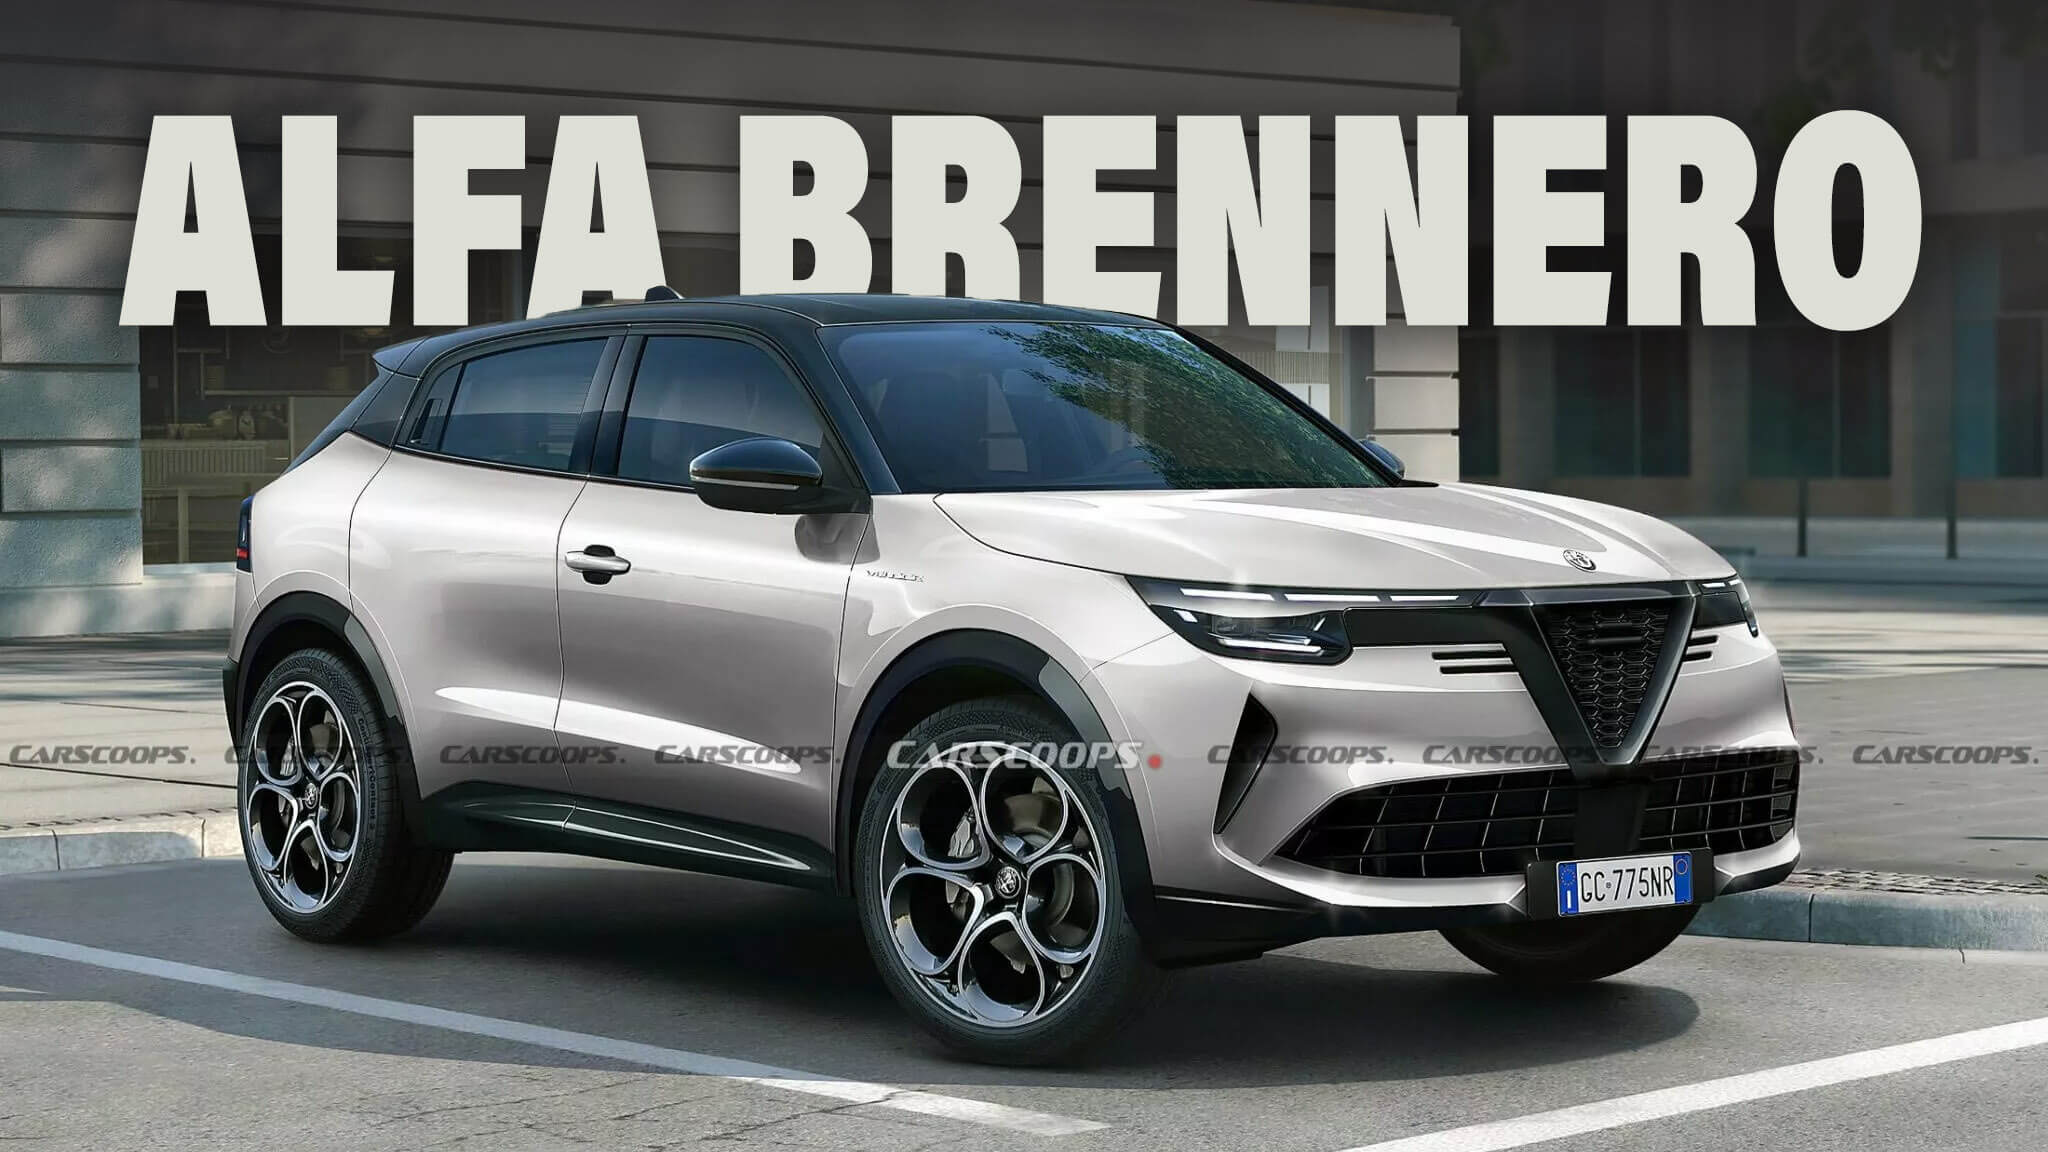 Alfa Romeo Brennero 2025: имя подтверждено плюс все, что мы знаем о маленьком внедорожнике